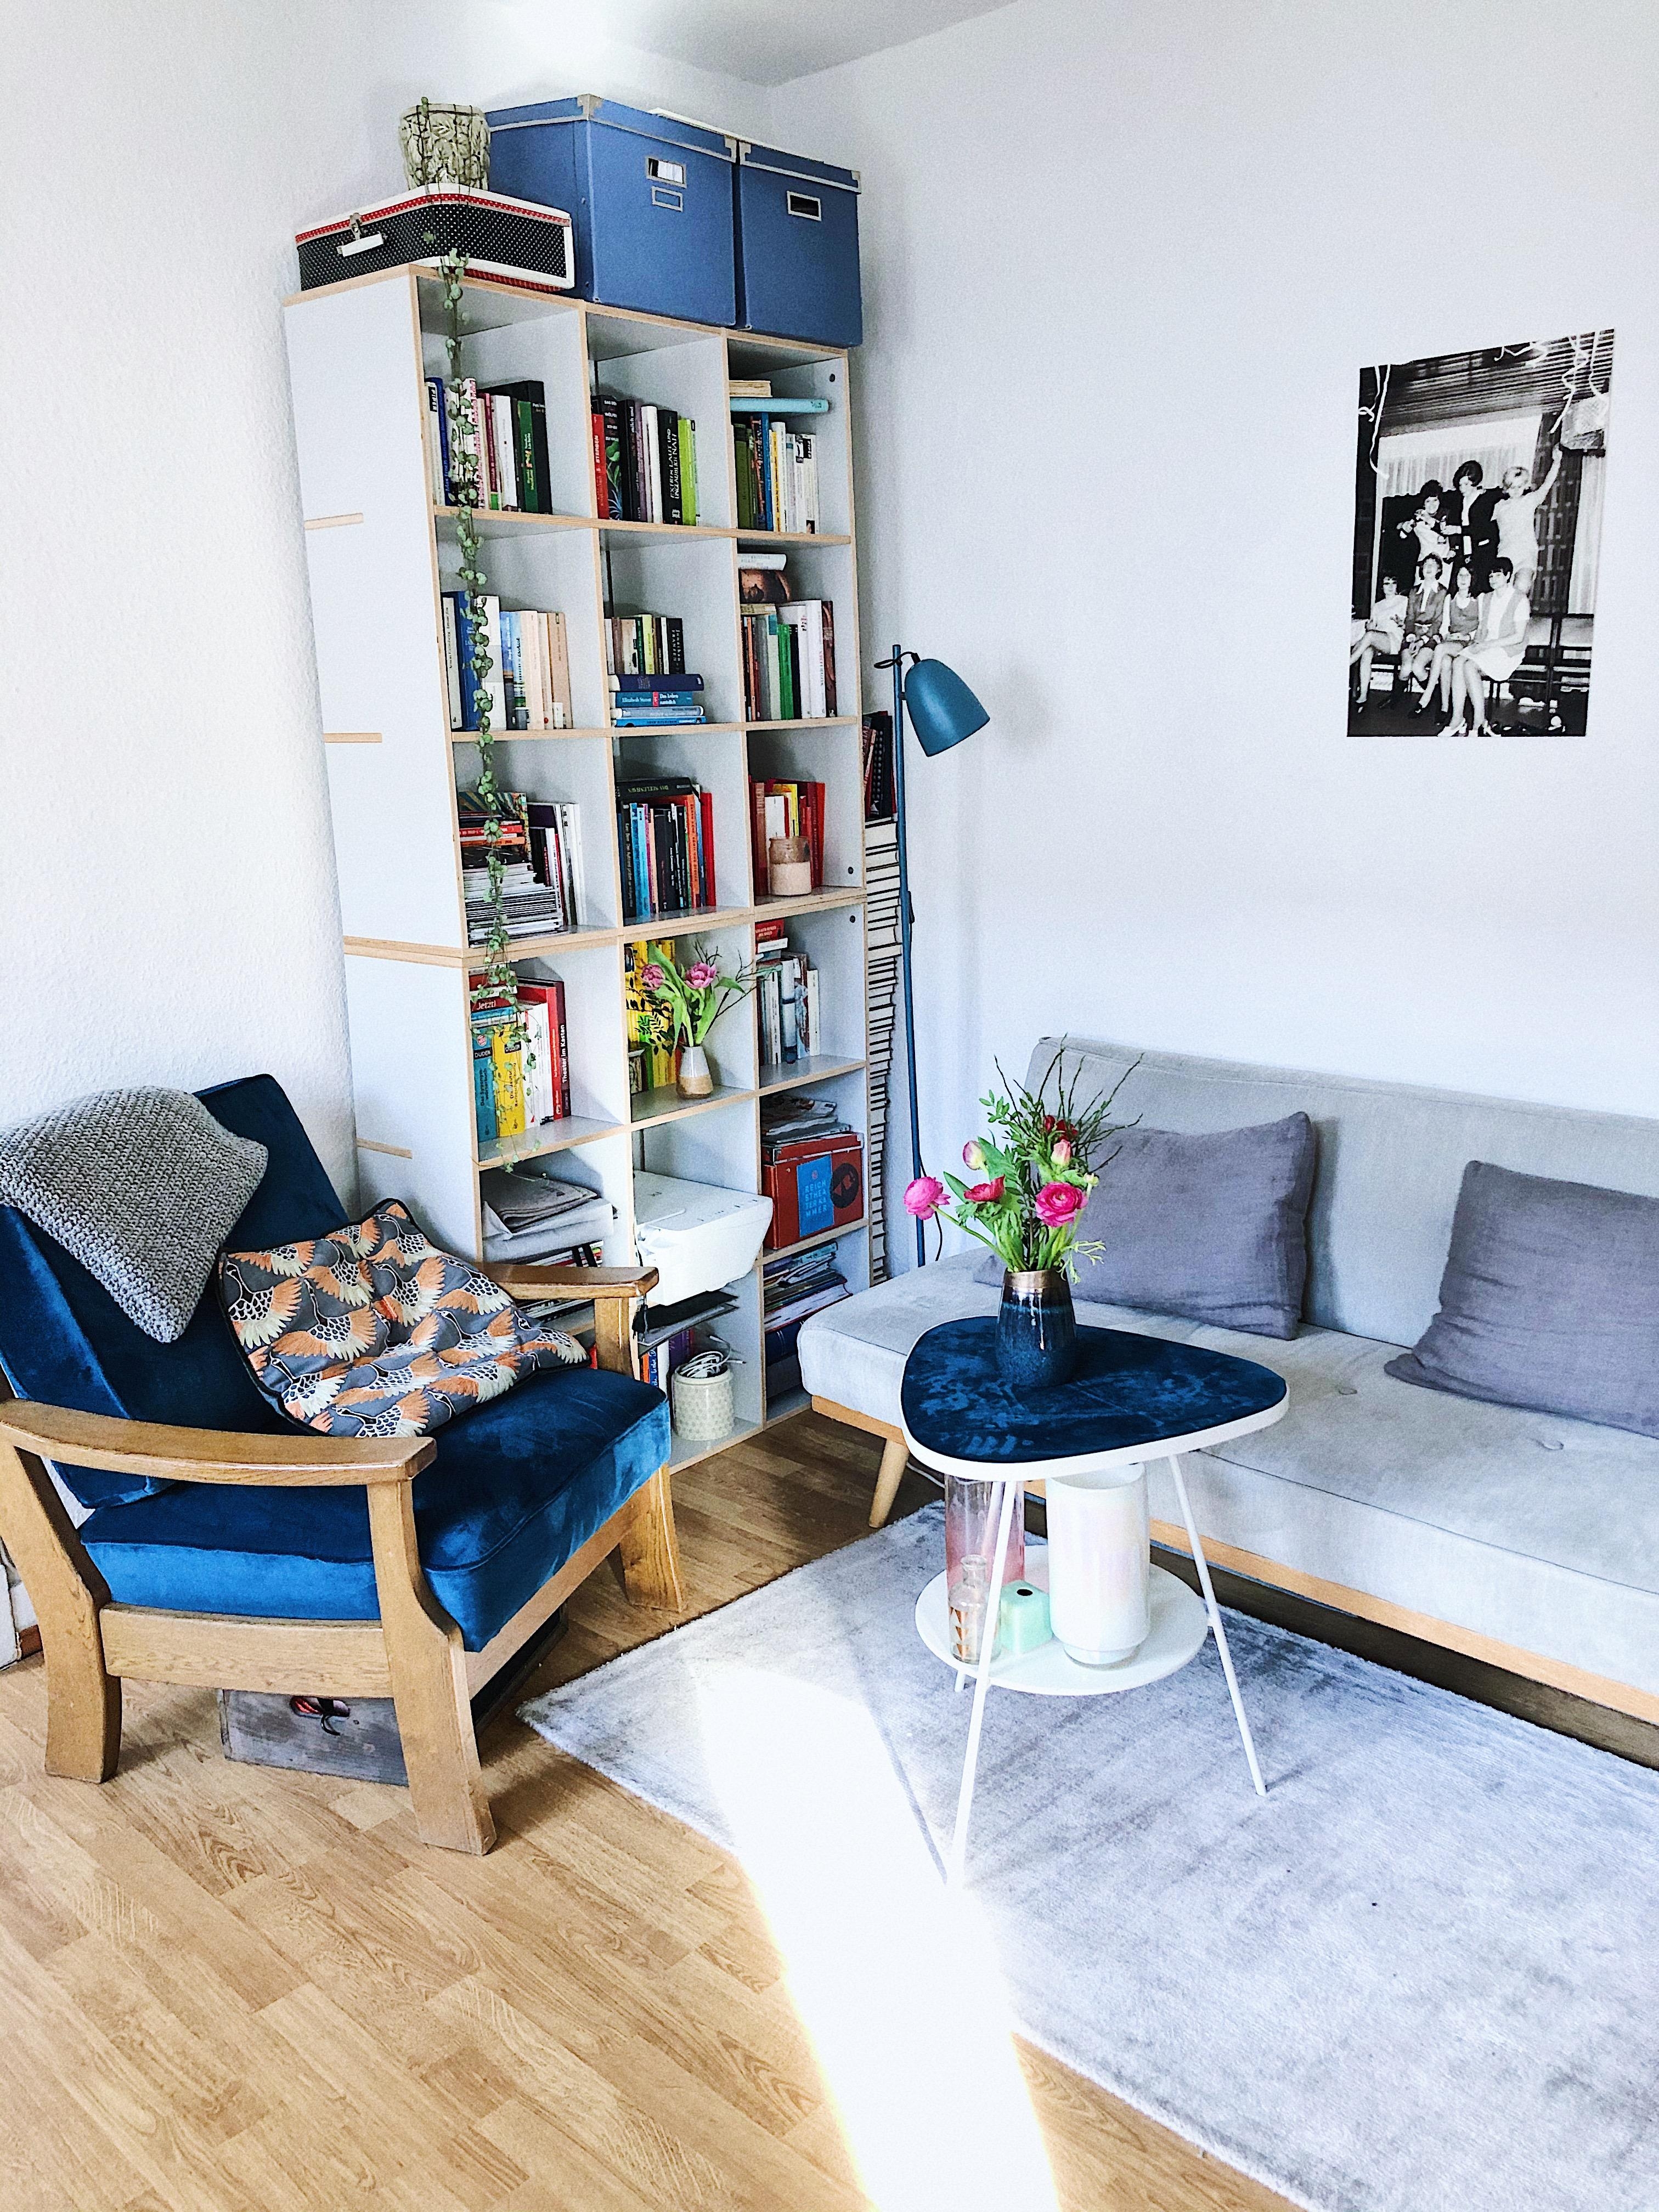 Lieblingssessel 💙
#Sessel #Wohnzimmer #Bücherregal